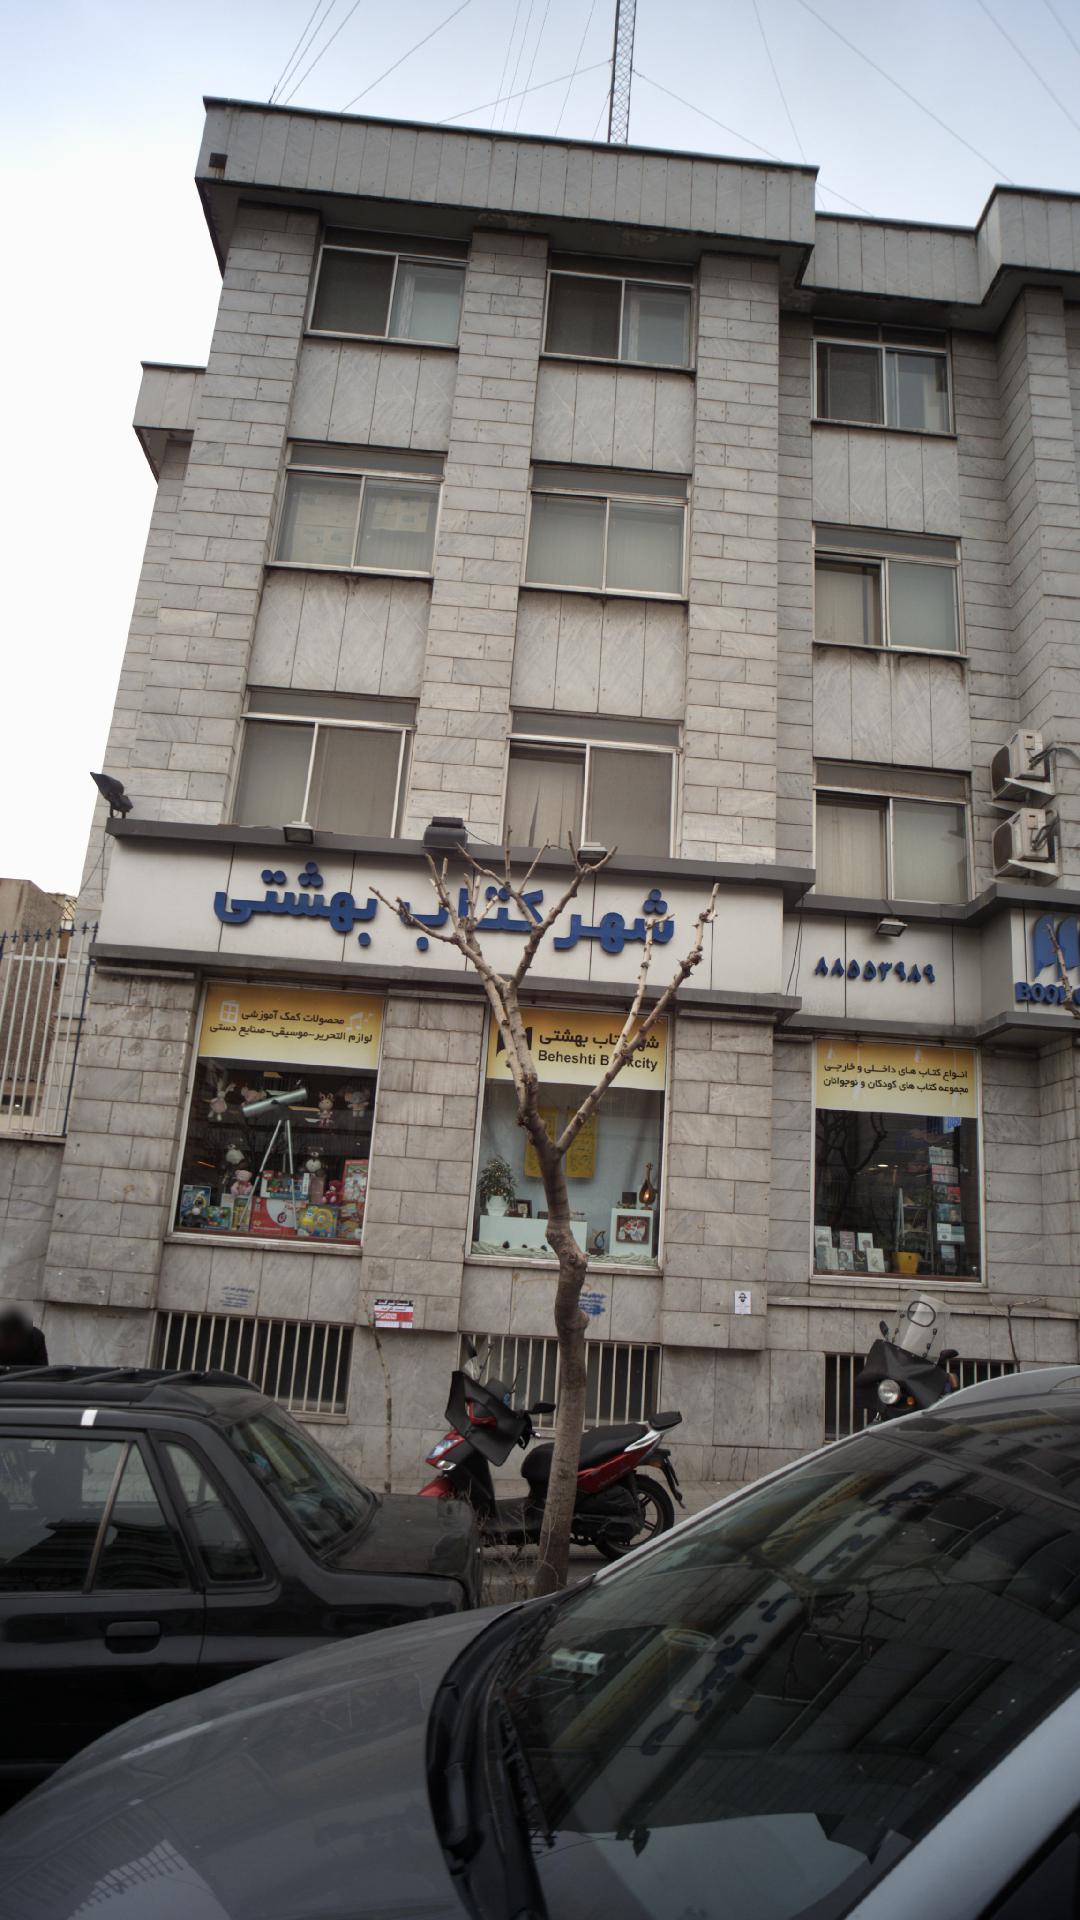 شهر کتاب بهشتی